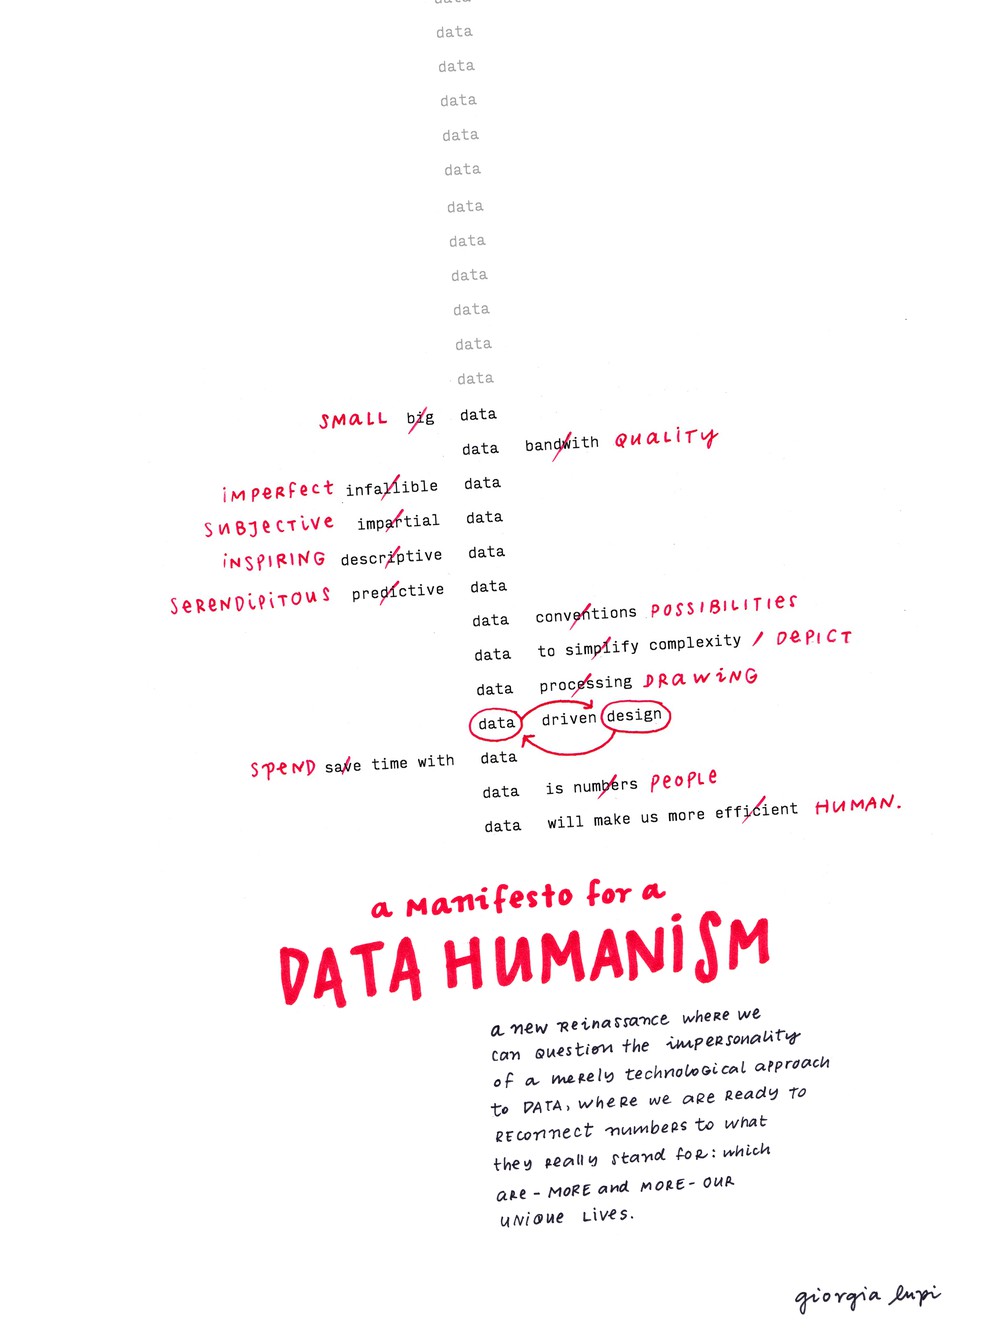 Podatkovni humanizem